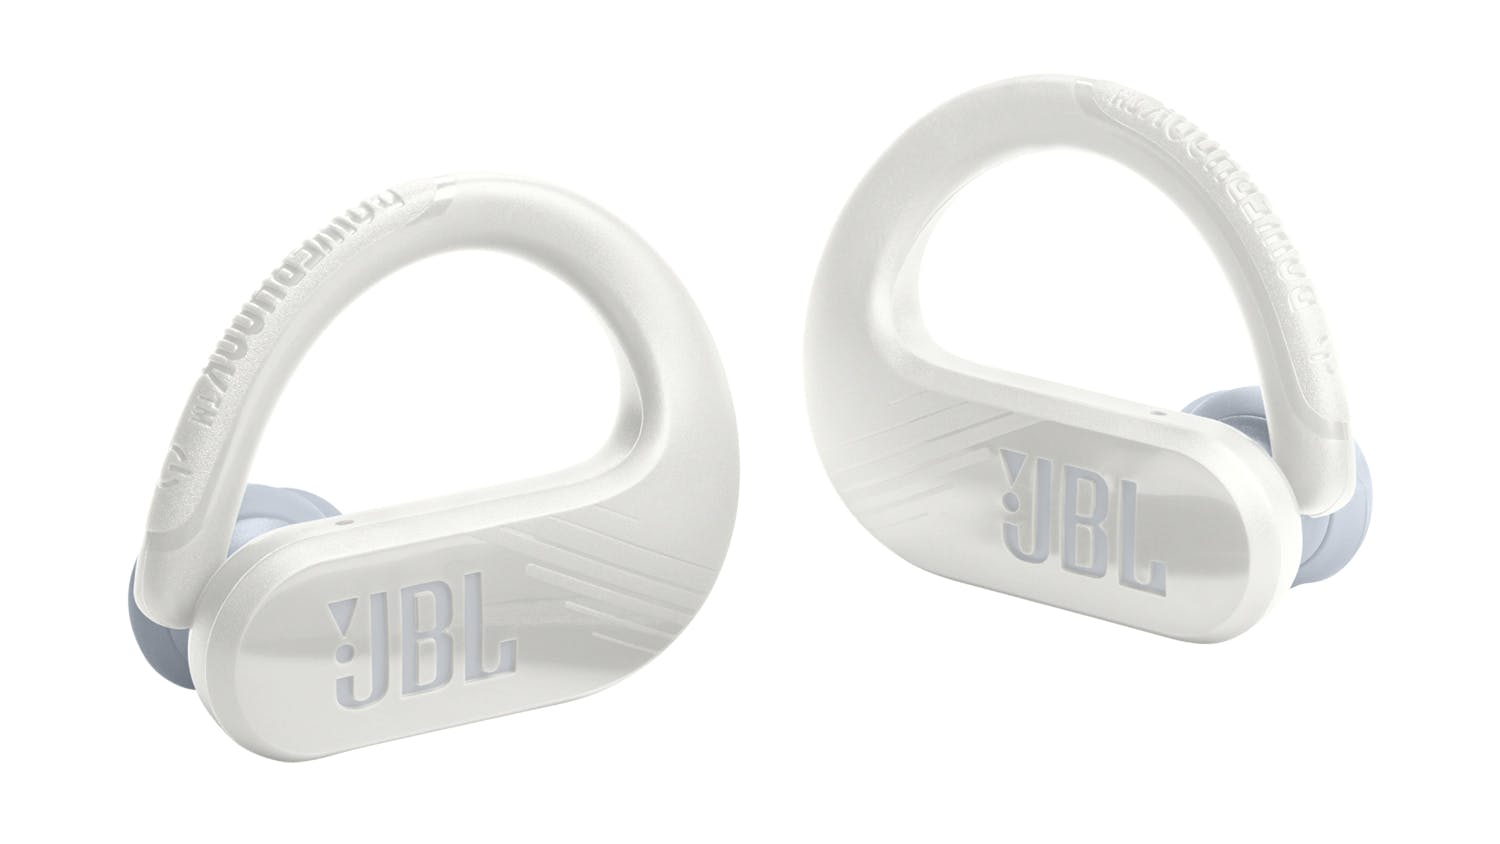 JBL Endurance Peak 3 Zealand White | Headphones New - Wireless Norman Sport True Harvey In-Ear